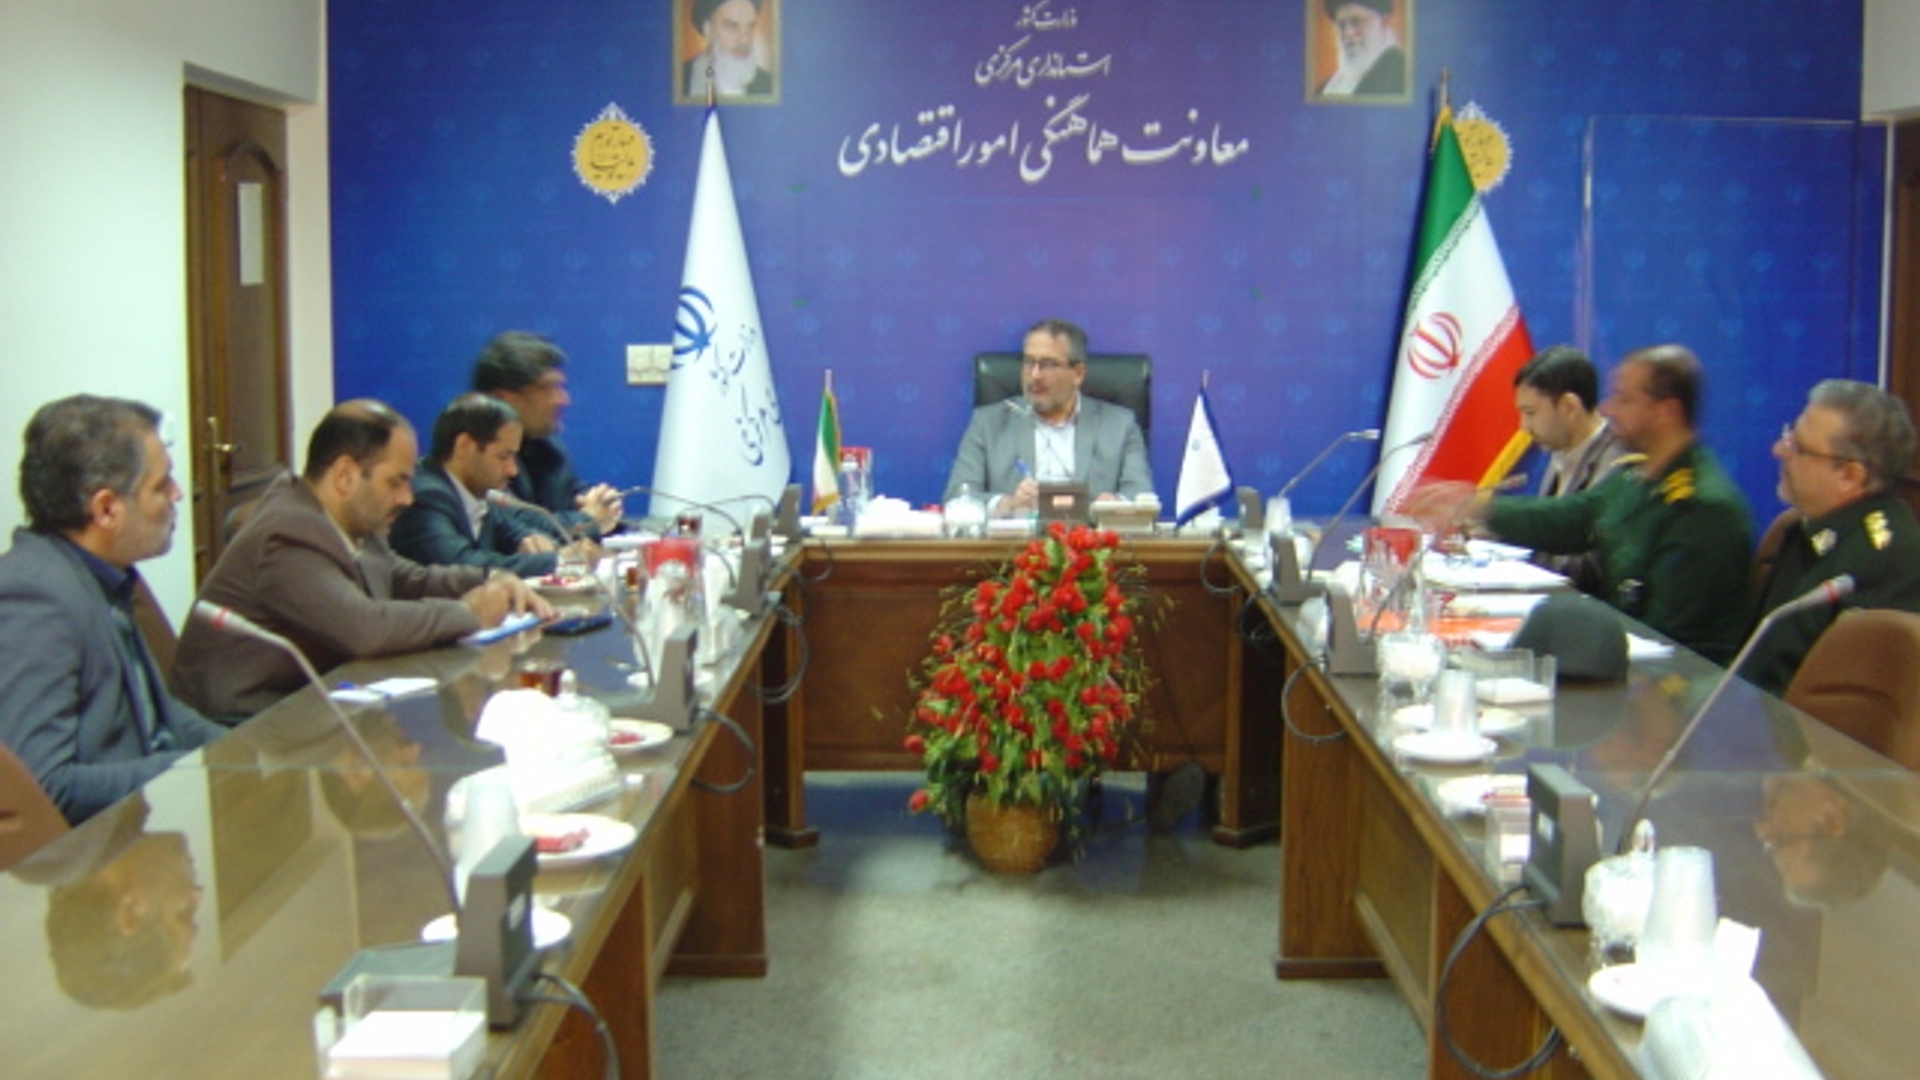 جلسه کمیته هماهنگی مسائل مربوط به گشت های محله محور بسیج رضویون ساعت 30-10 روز سه شنبه مورخ 5-10-1402 به ریاست آقای رحیمی تبار مدیر کل امنیتی و انتظامی برگزار گردید.